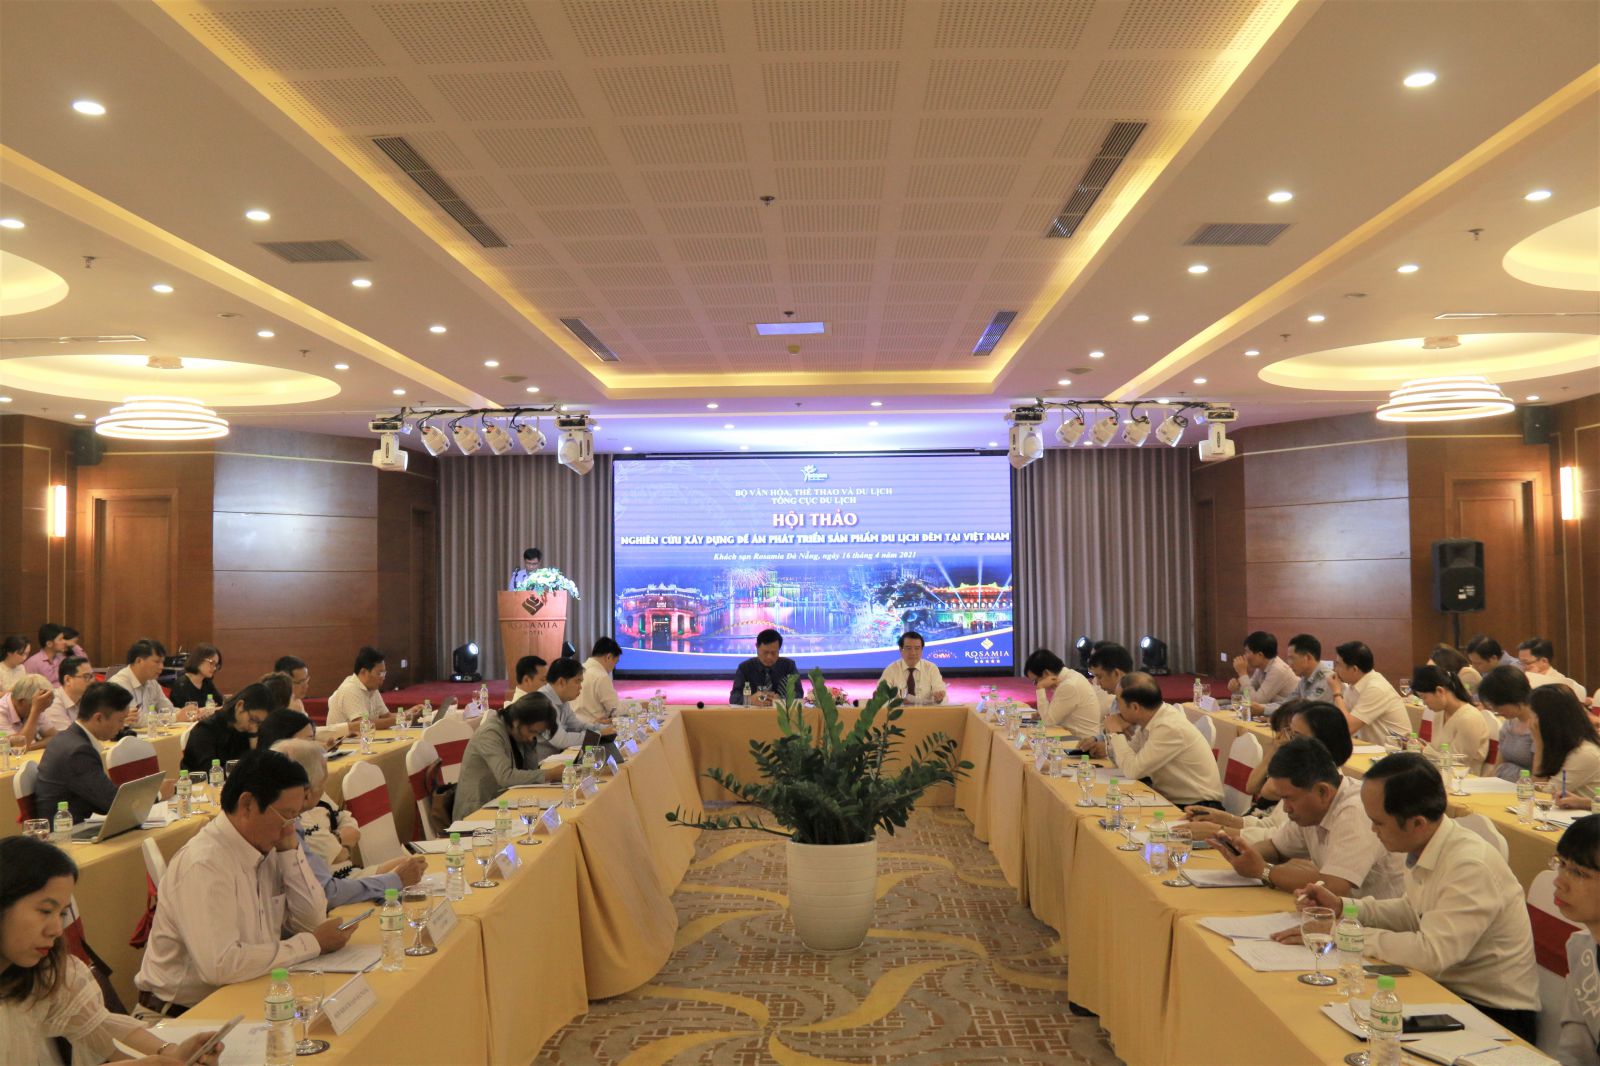 Hội thảo “Xây dựng Đề án phát triển sản phẩm du lịch đêm tại Việt Nam” diễn ra tại Đà Nẵng chiều ngày 16/4.